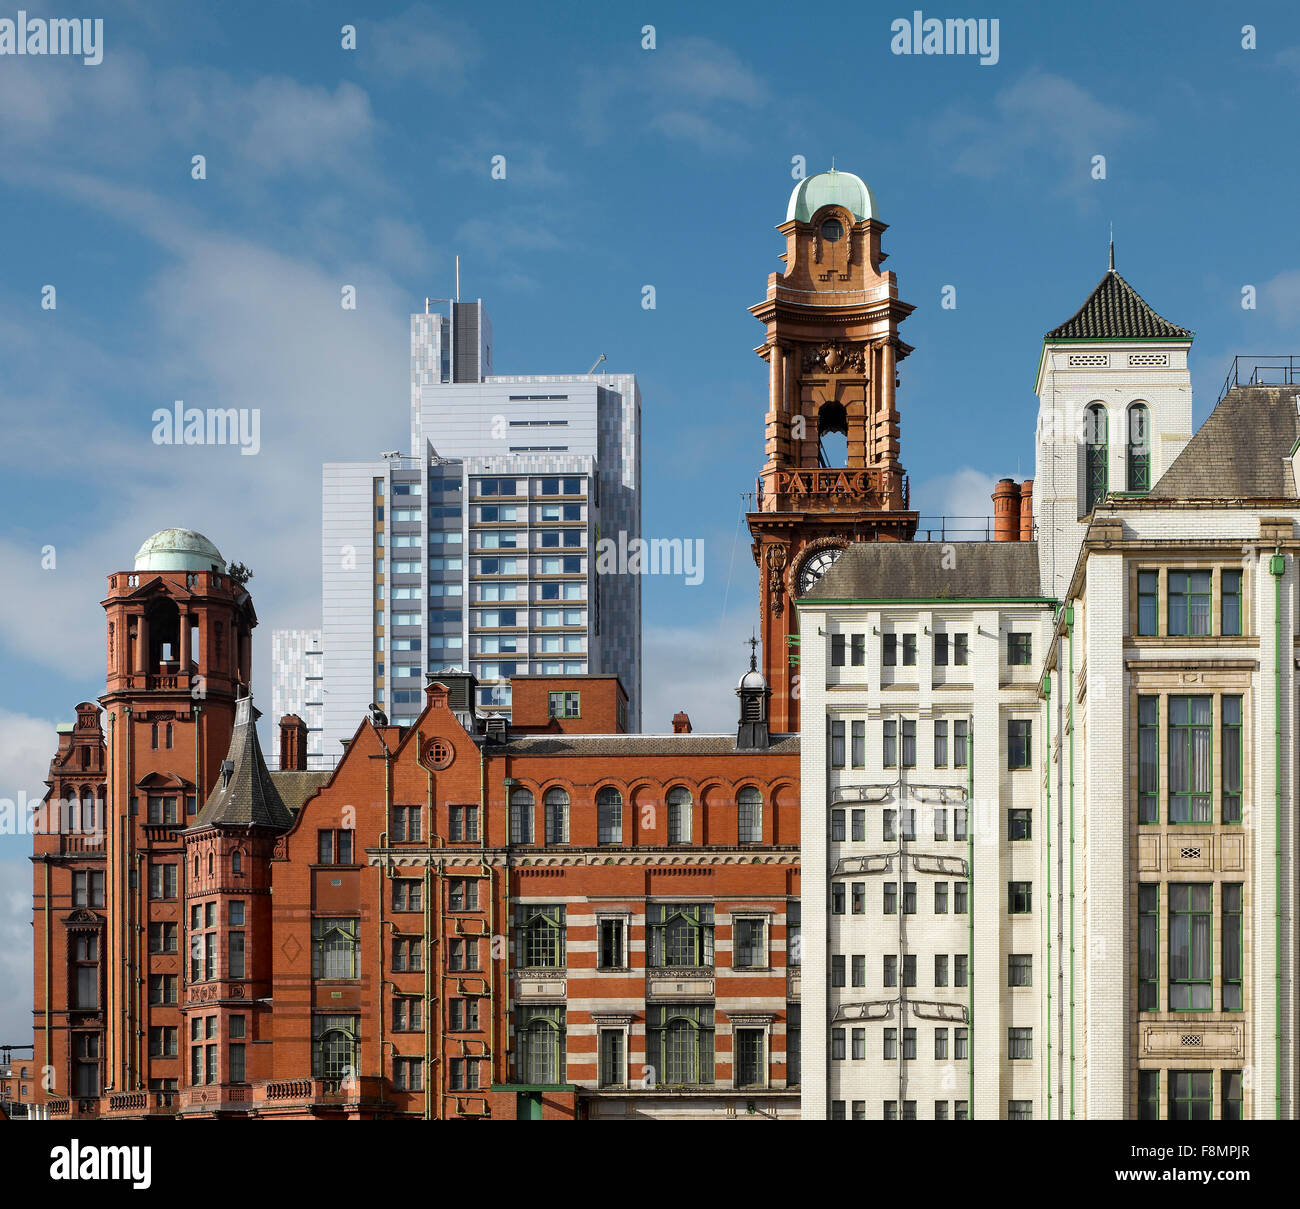 Il Contrasto Di Stili Architettonici Vecchi E Nuovi Edifici A Manchester Include Moderna Torre Di Alloggi Per Studenti Foto Stock Alamy